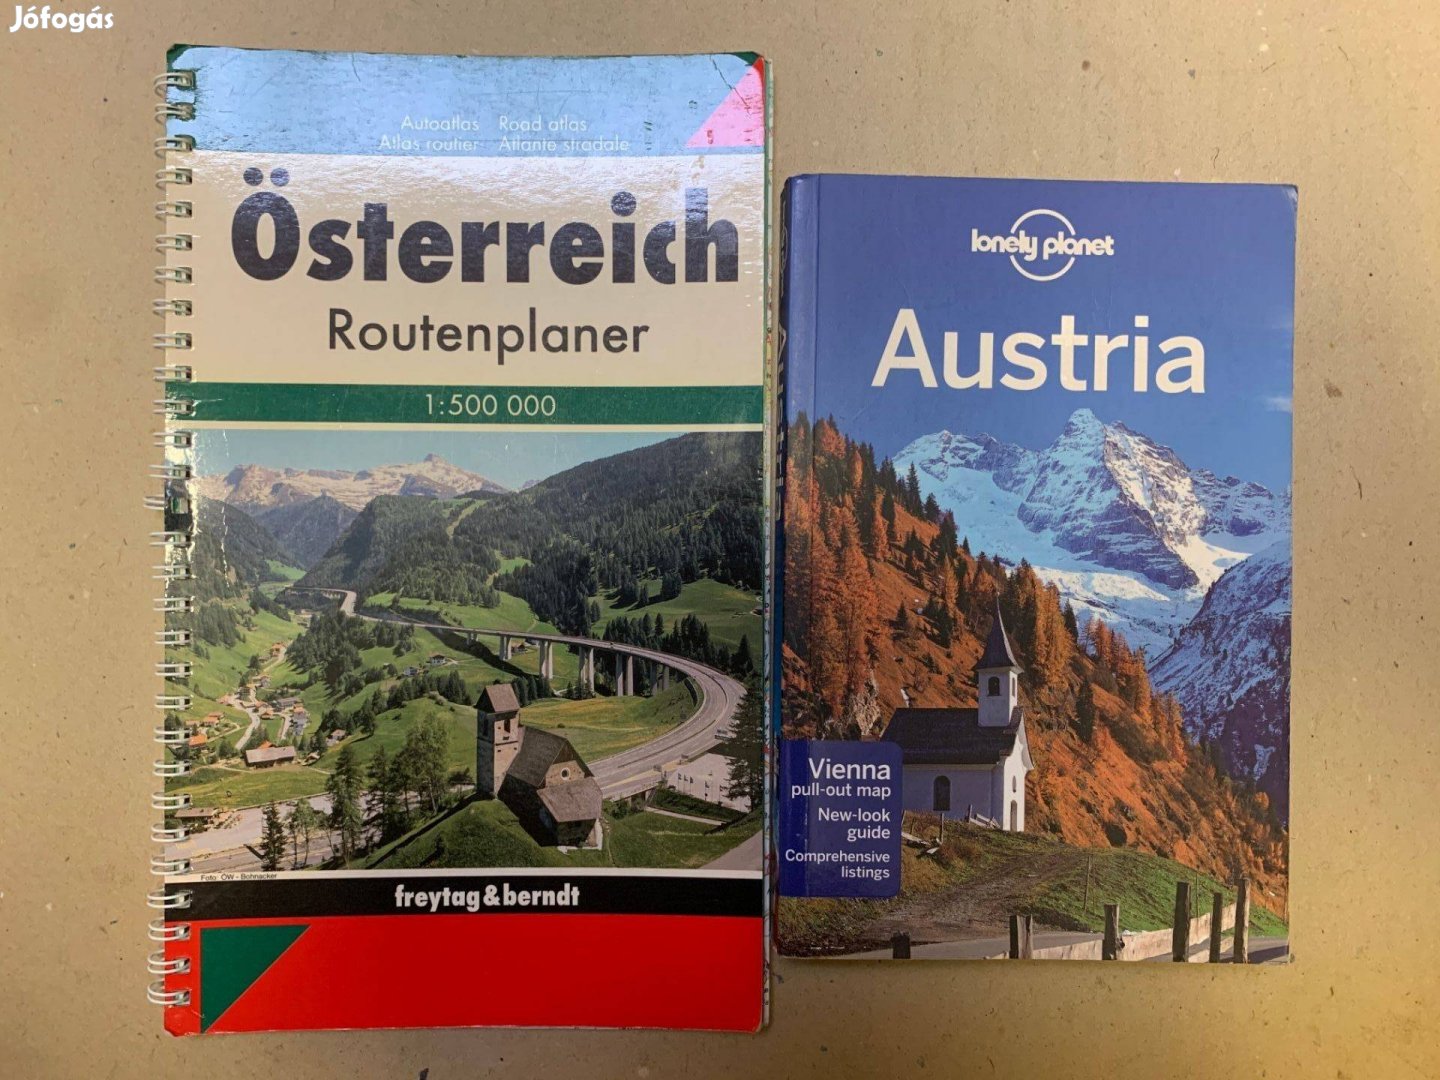 Lonely Planet Ausztria útikönyv és térkép